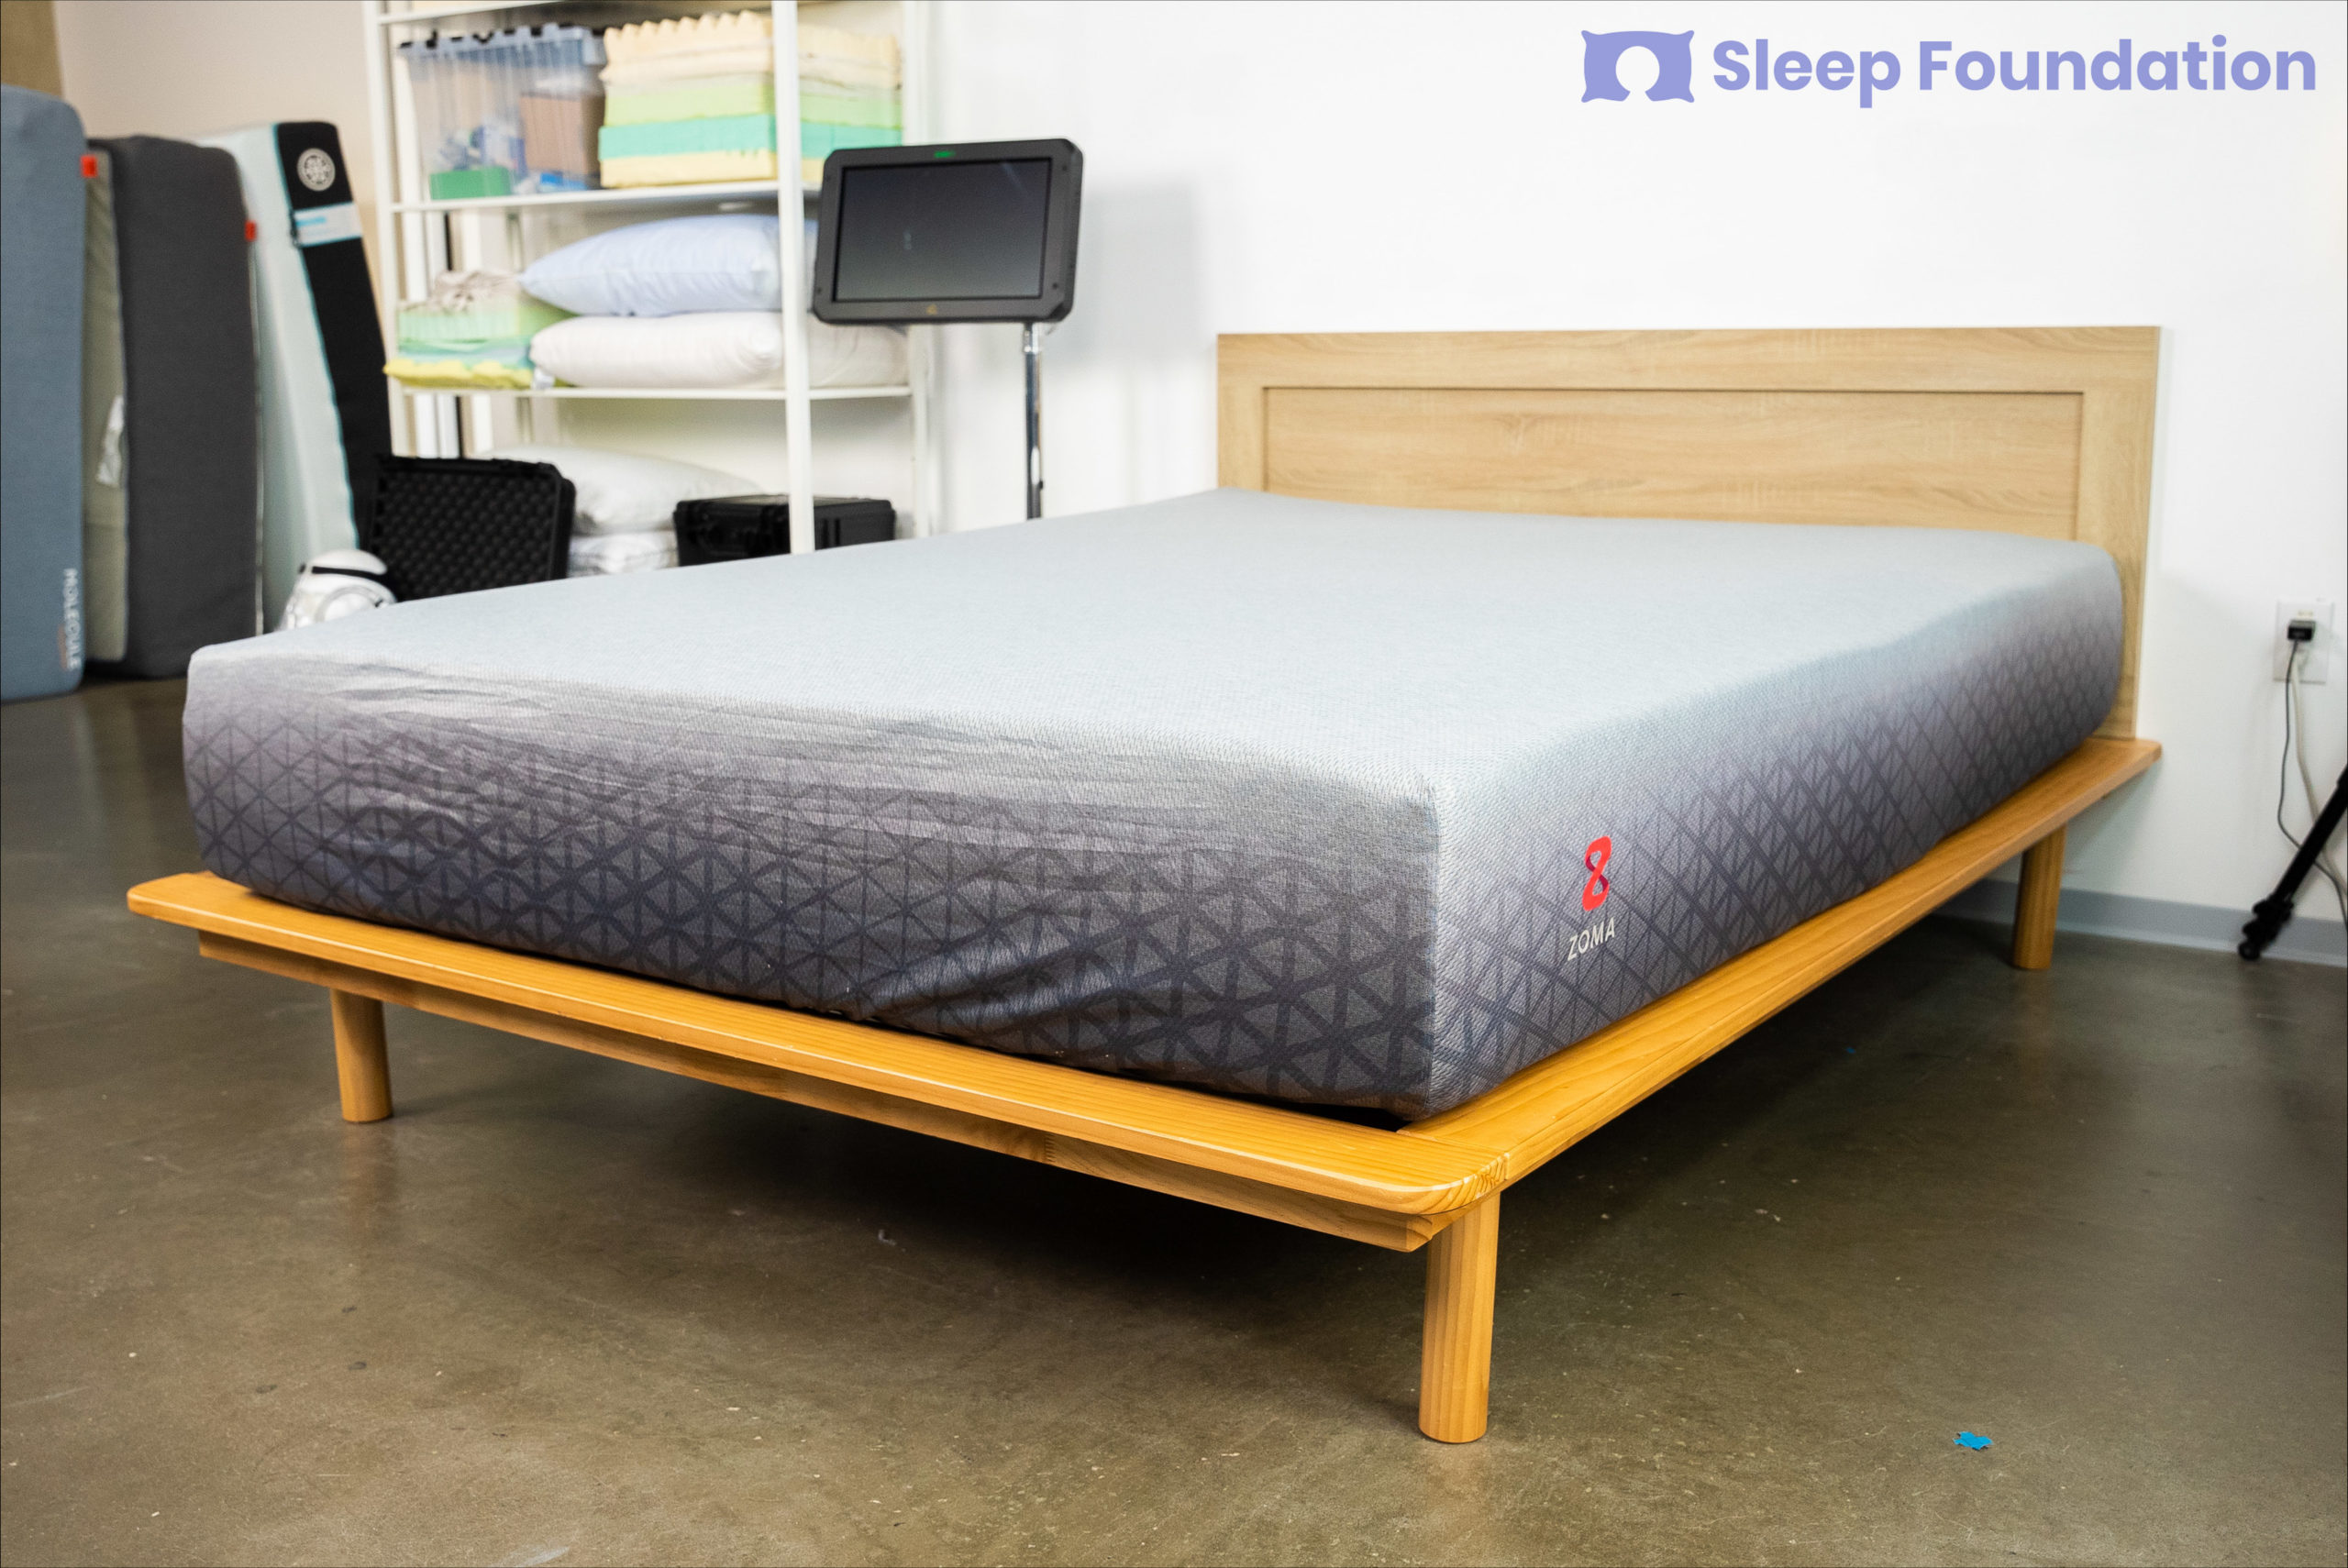 firmness of mattress for sciatica